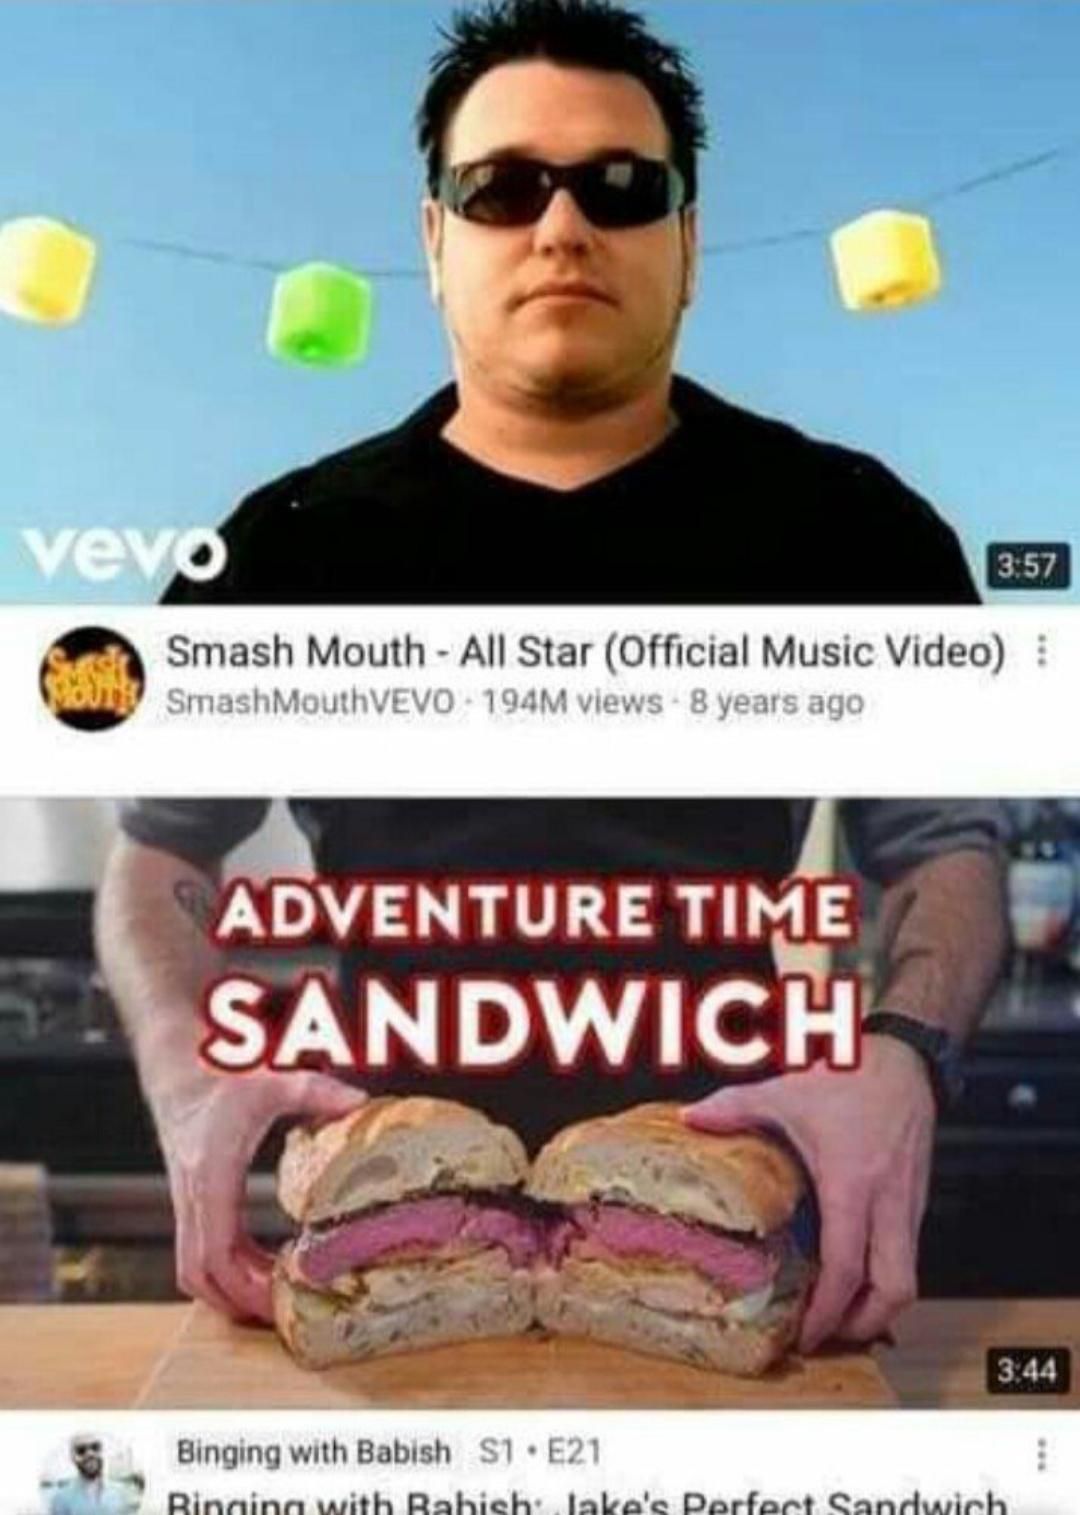 Nice job, YouTube.